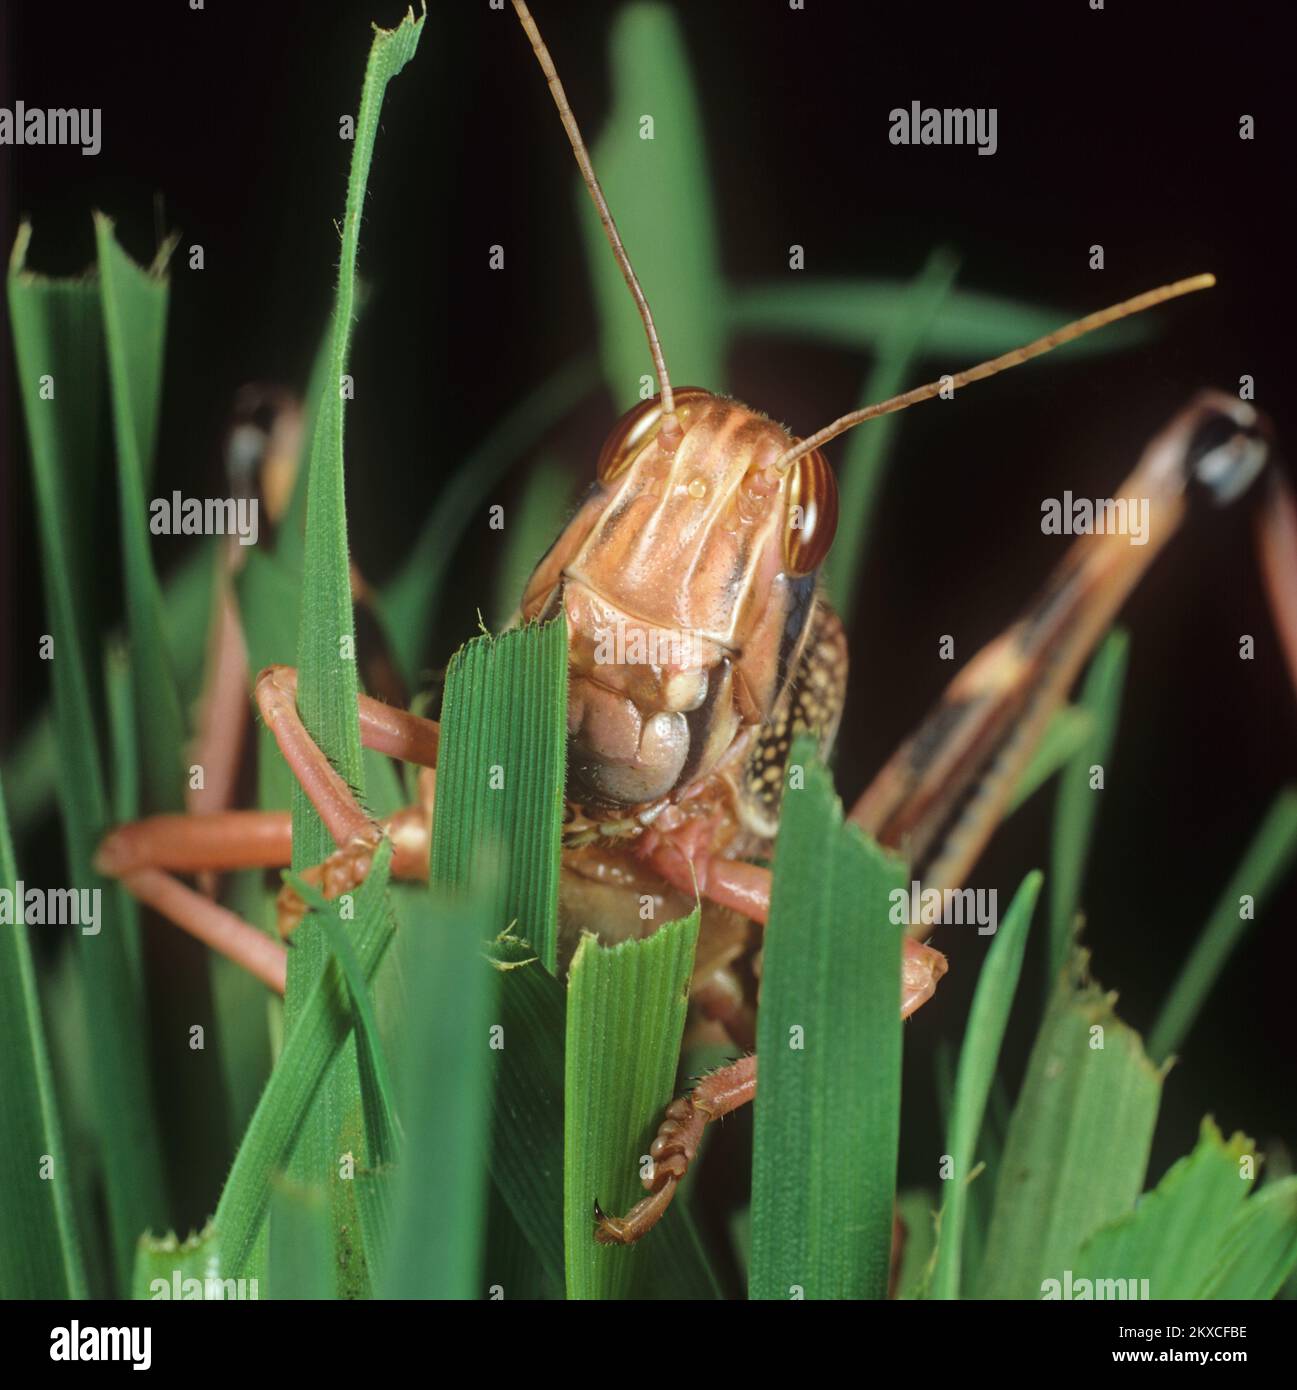 Langosta del desierto (Schistocerca gregaria) cabeza, piernas y antenas de adulto, coloración rosa, alimentación sobre hojas de trigo, estudio Foto de stock